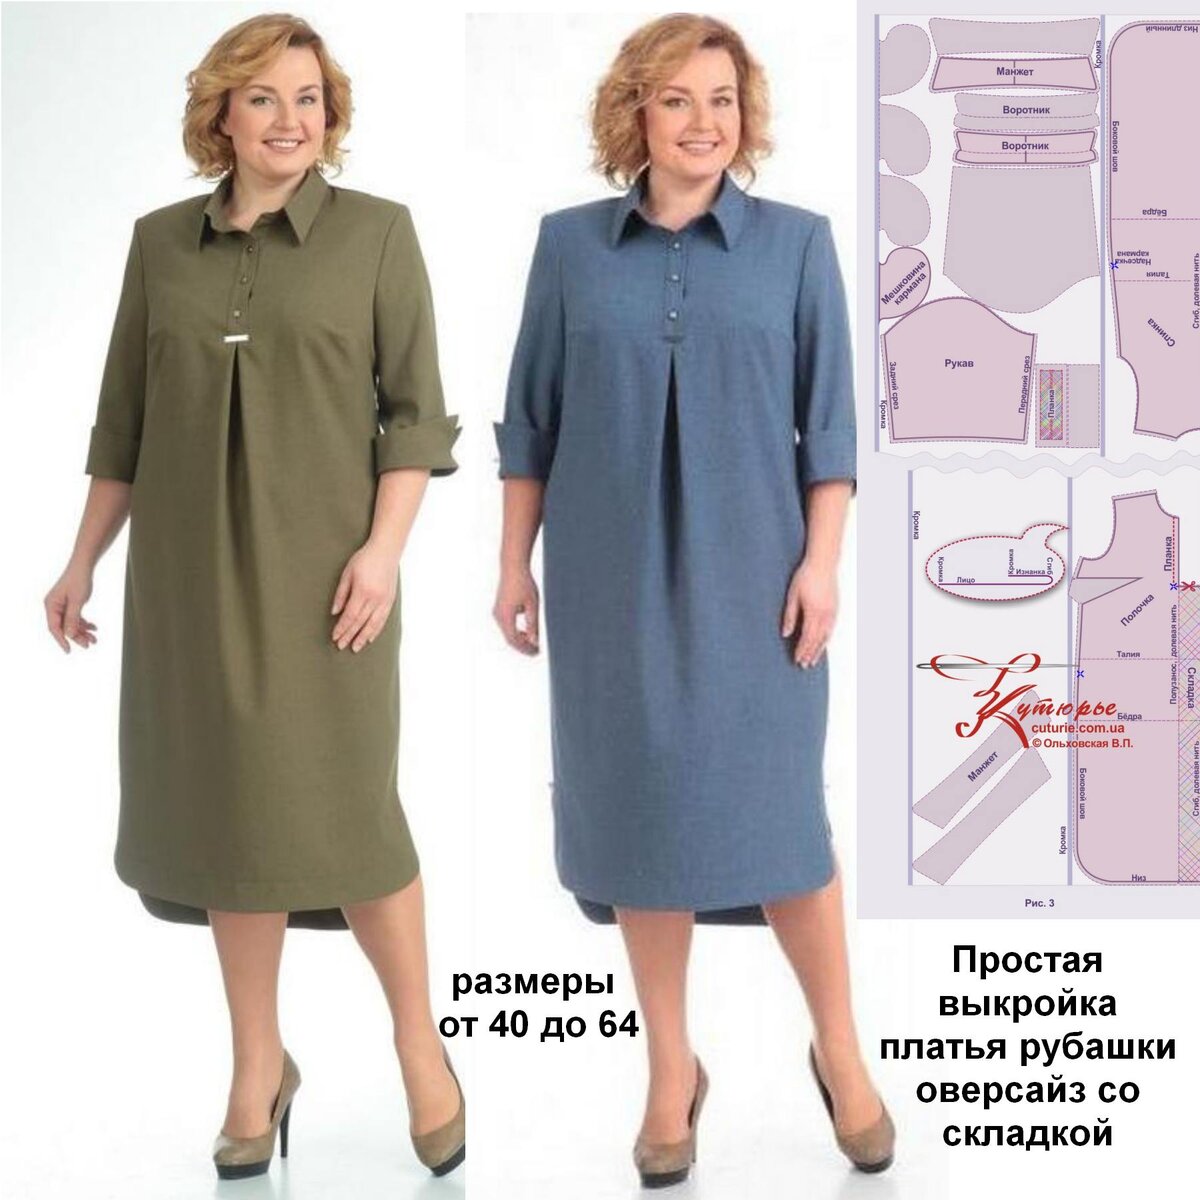 Товары оптом на centerforstrategy.ru - выкройка блузки без рукавов с воротником